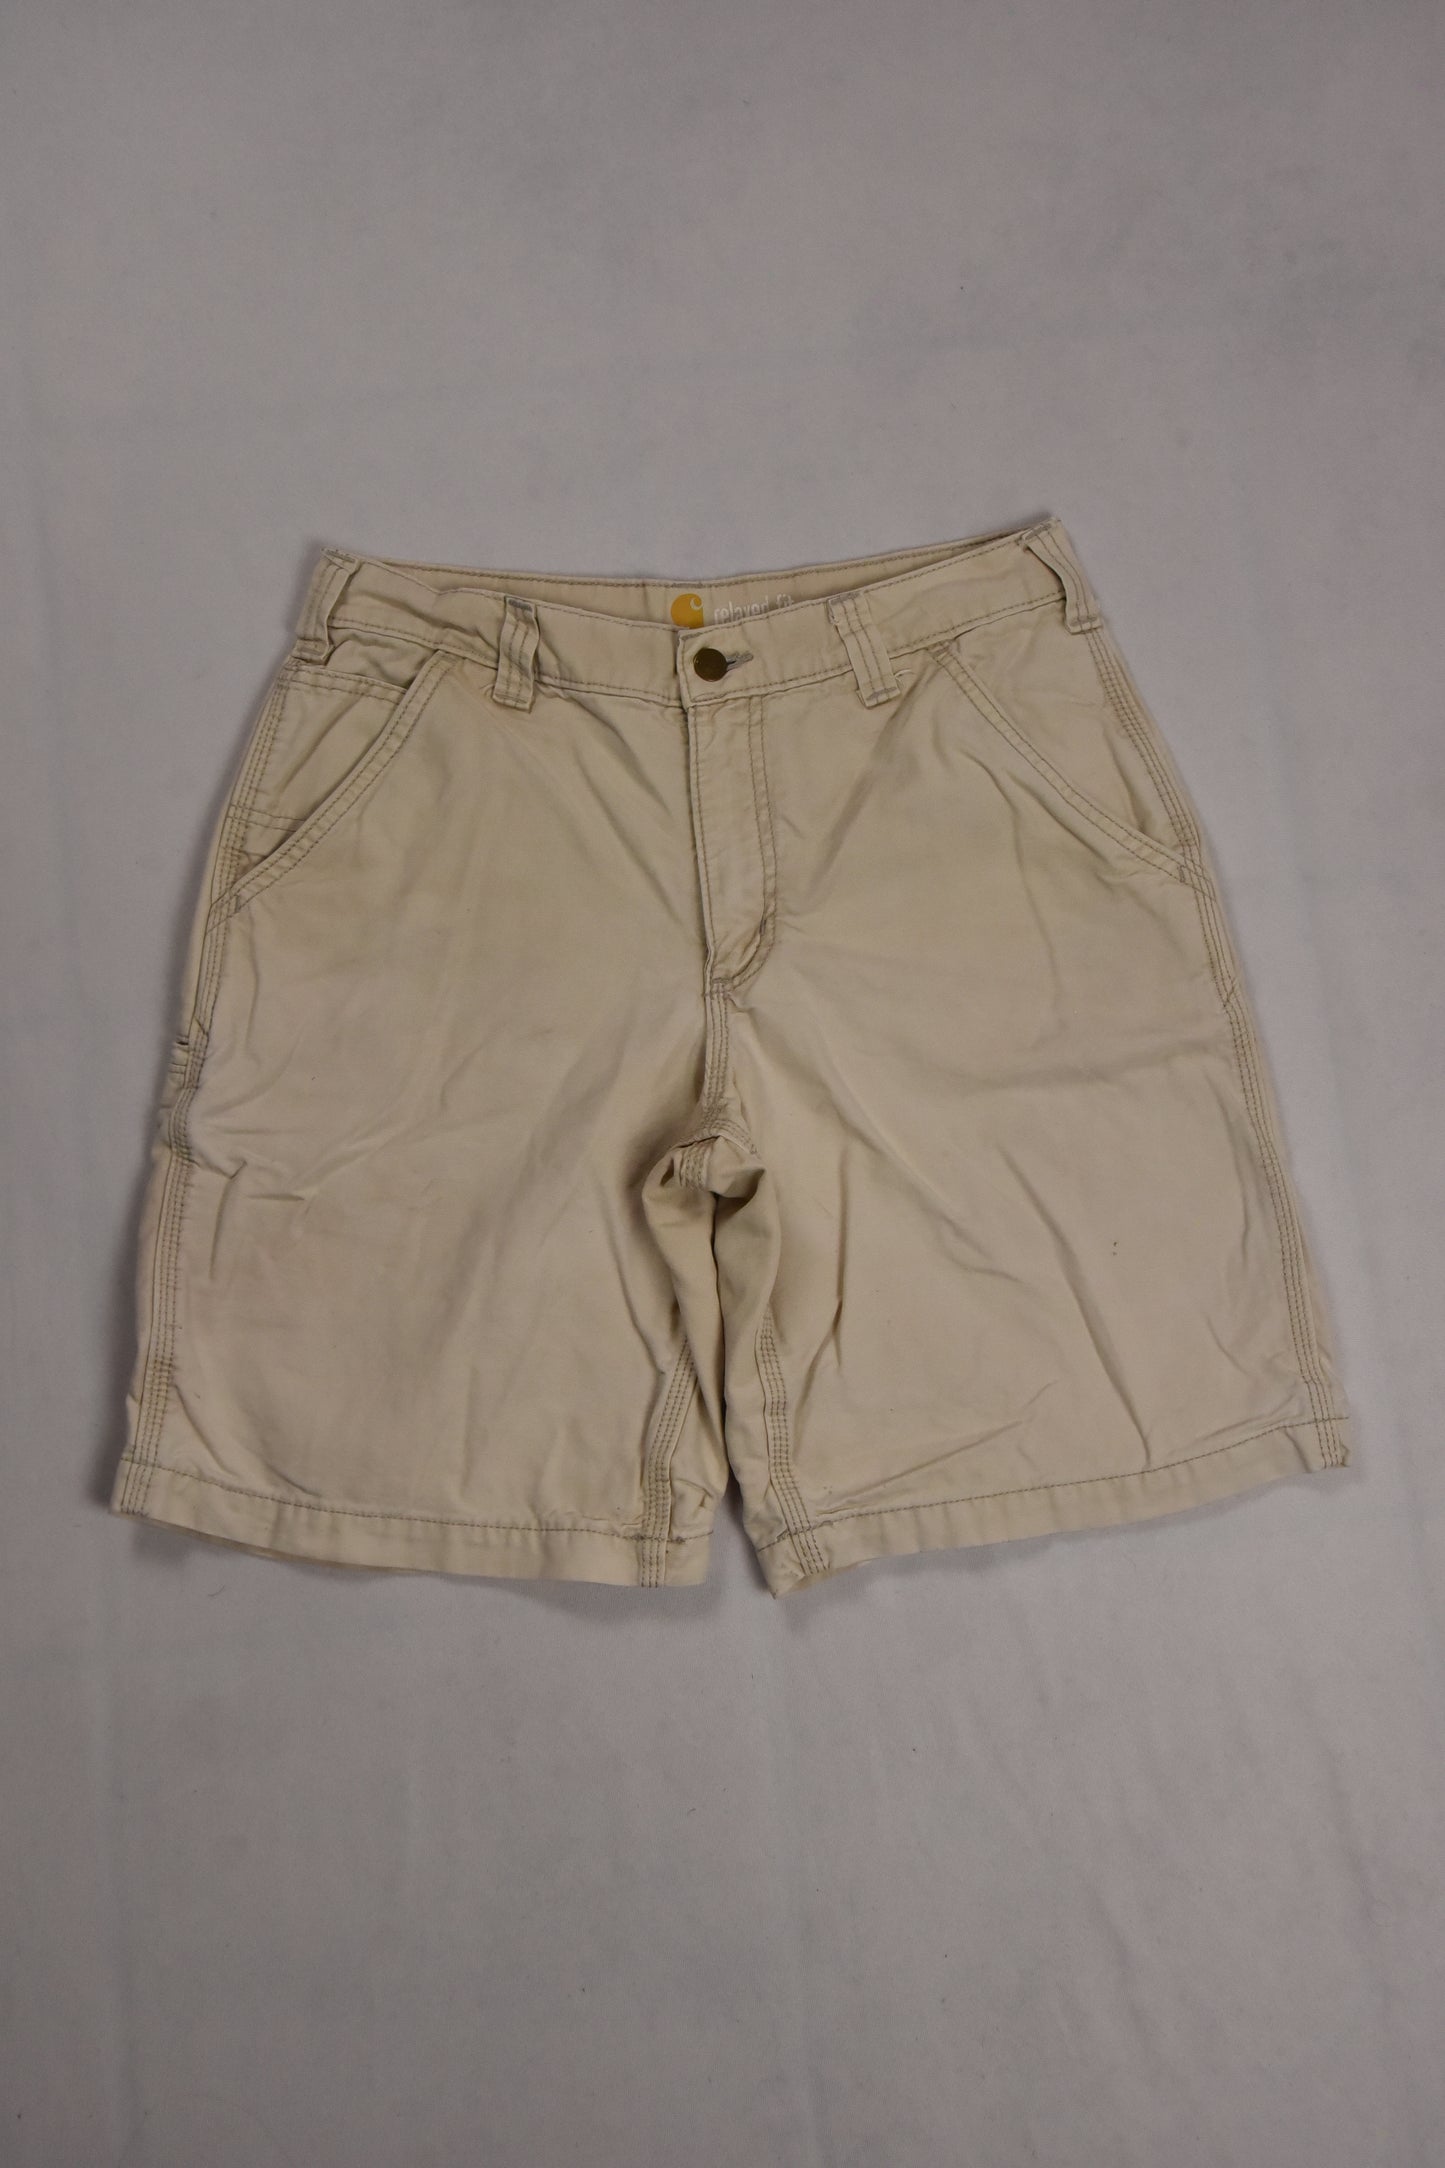 Carhartt workwear shorts / 31